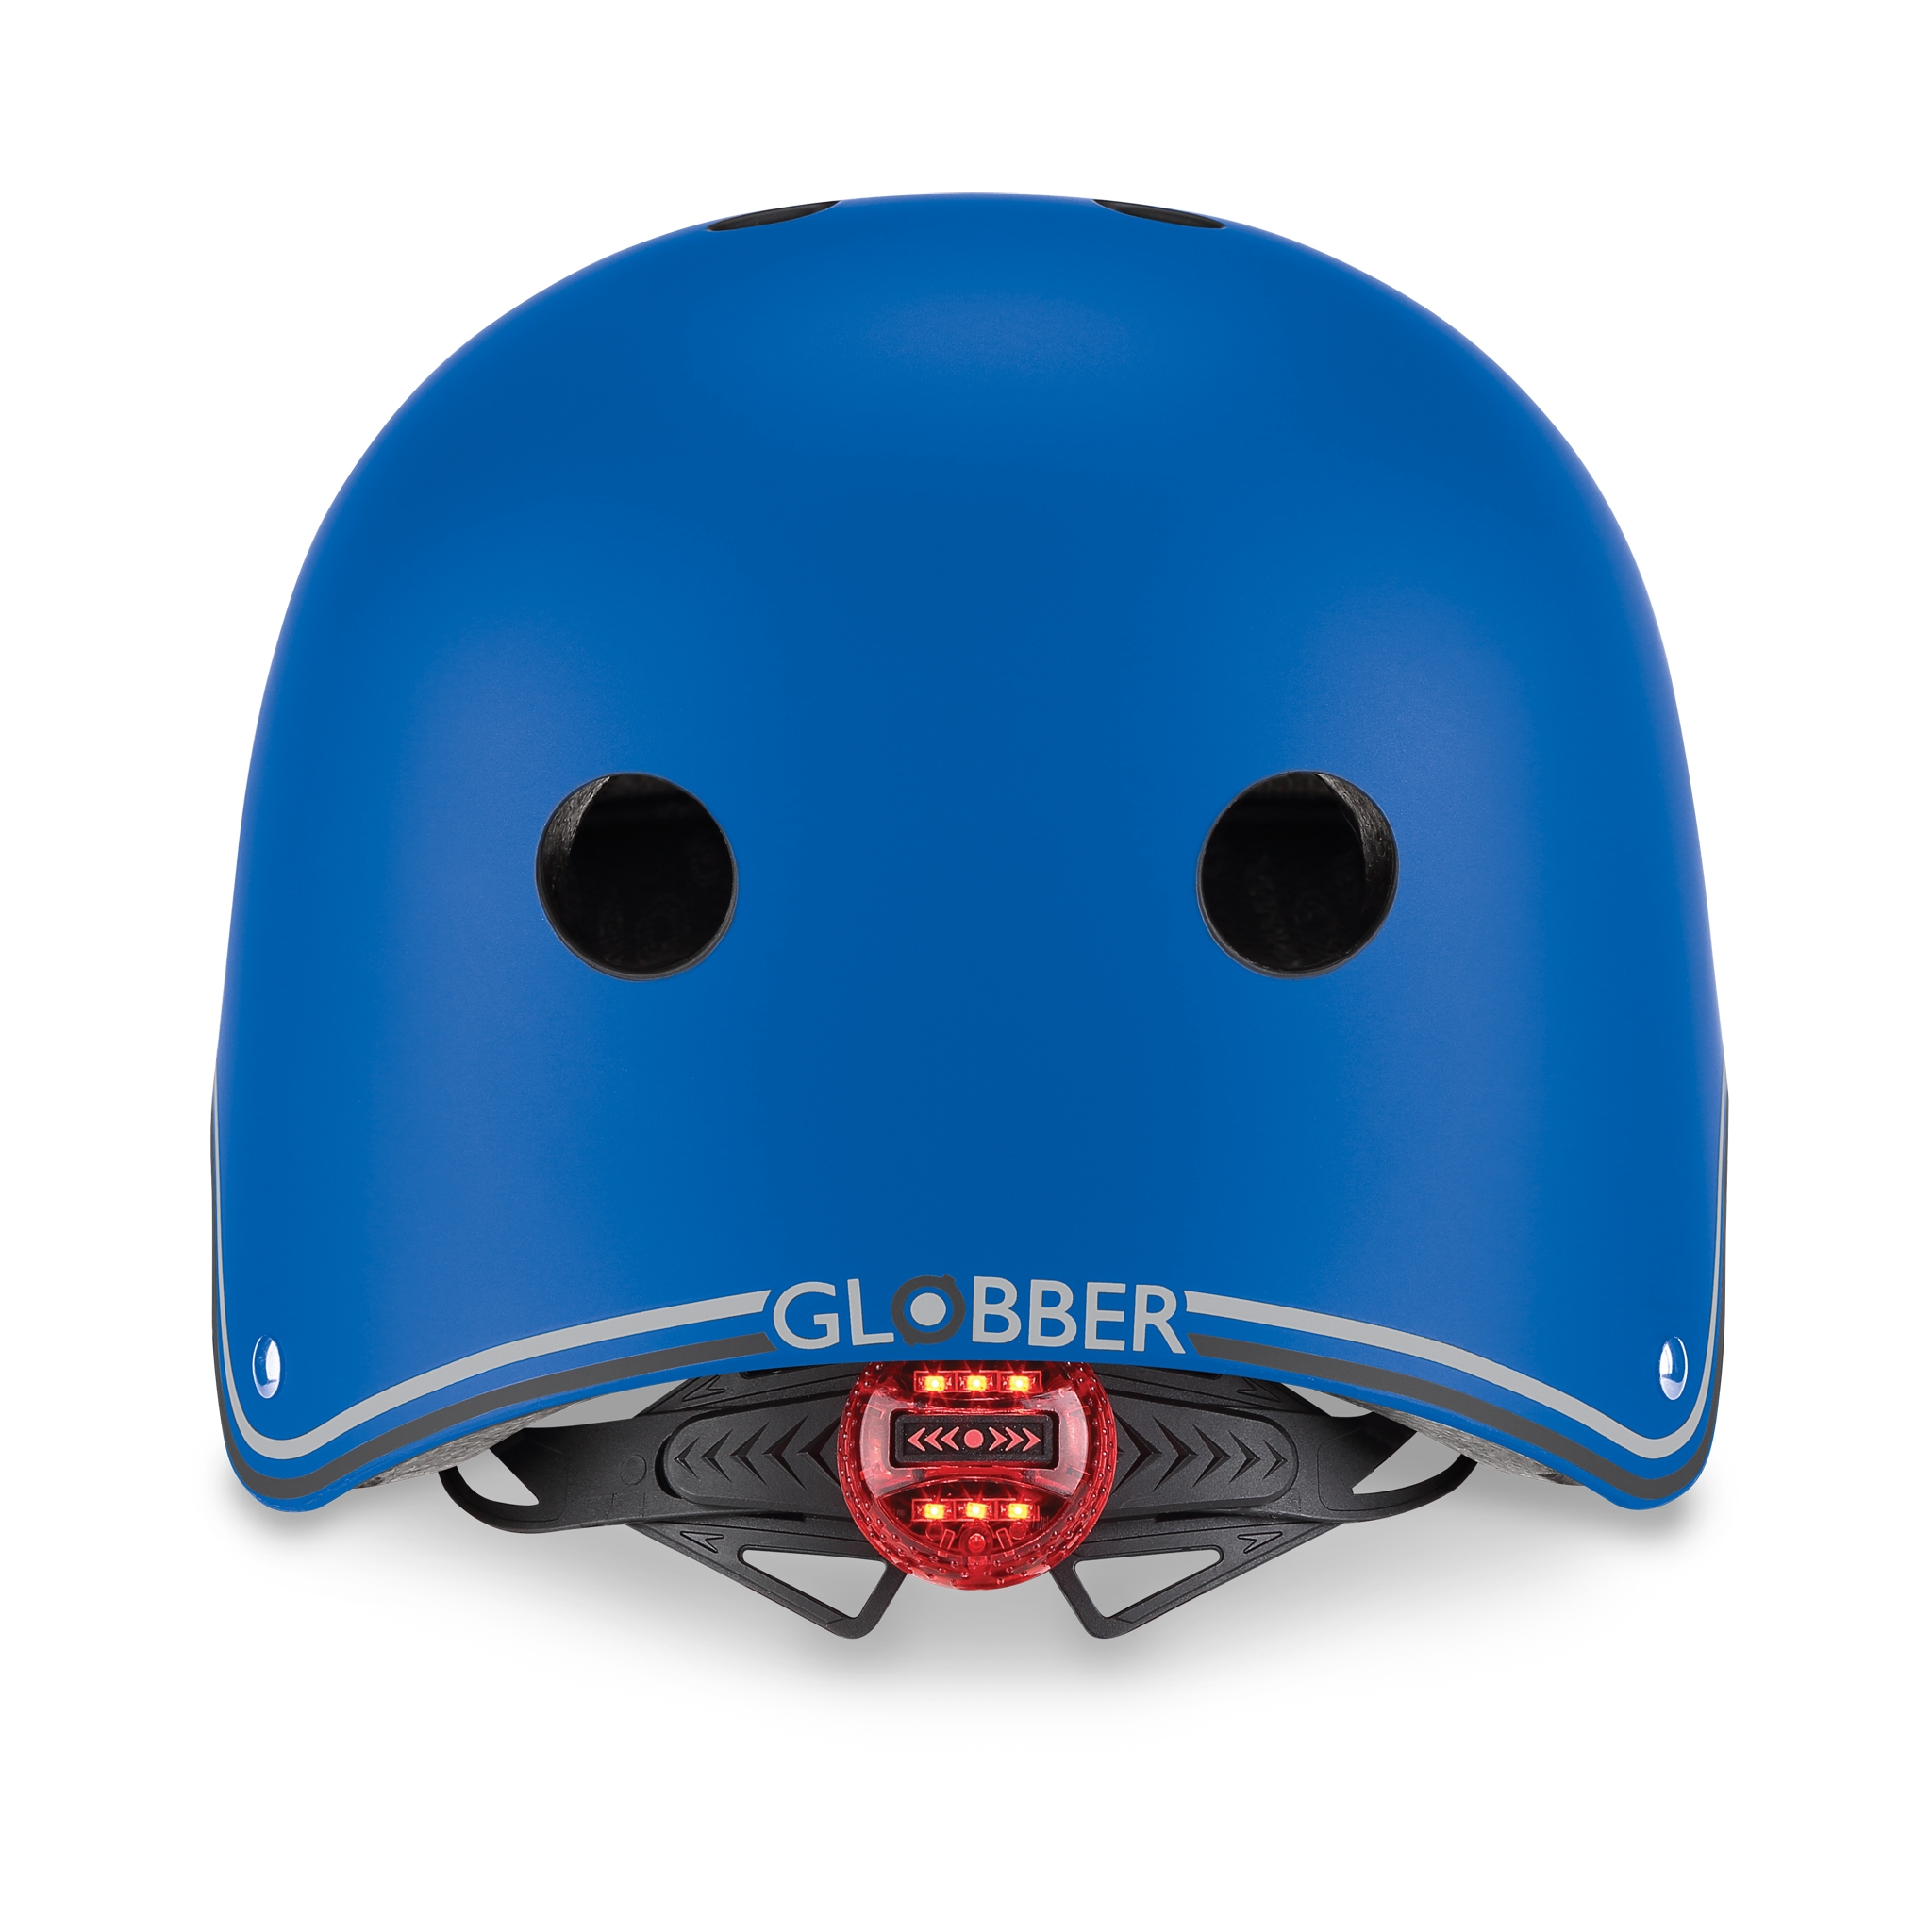 PRIMO-helmets-scooter-helmets-for-kids-with-LED-lights-safe-helmet-for-kids-navy-blue 2